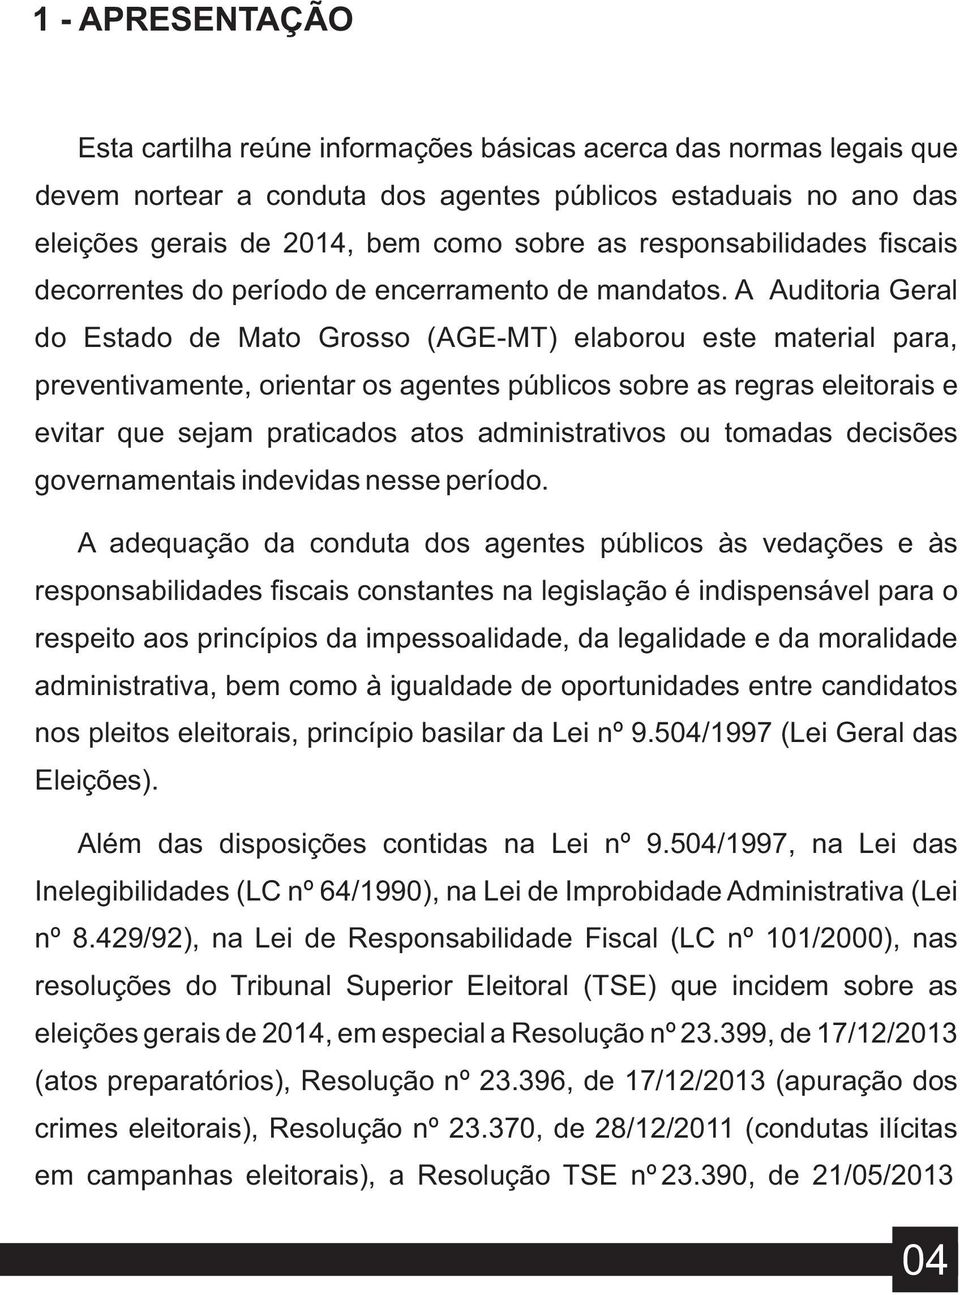 A Auditoria Geral do Estado de Mato Grosso (AGE-MT) elaborou este material para, preventivamente, orientar os agentes públicos sobre as regras eleitorais e evitar que sejam praticados atos